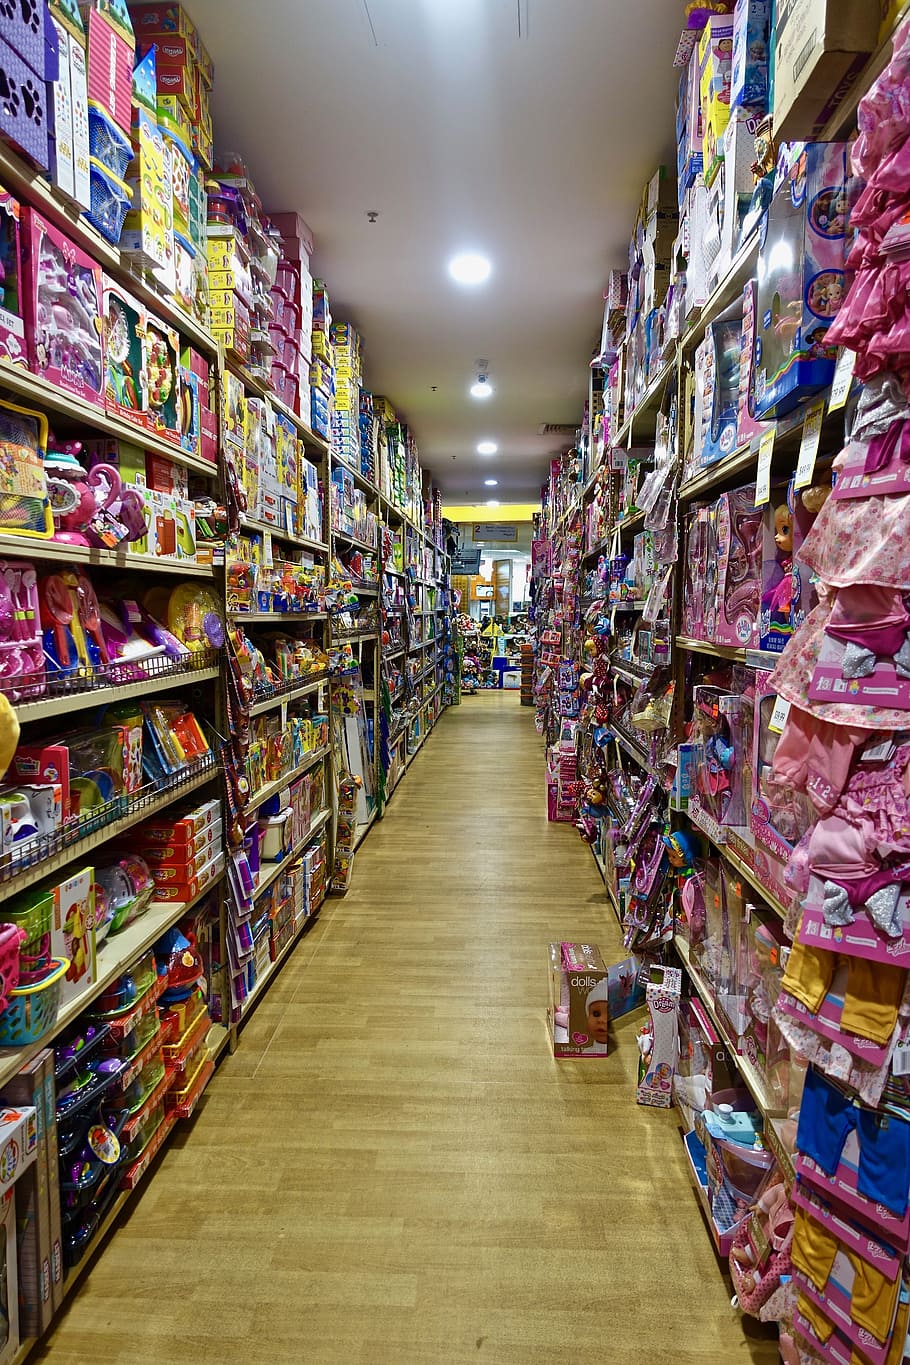 isle, shopping, toys, shelving, goods, products, options, choice, variation, abundance